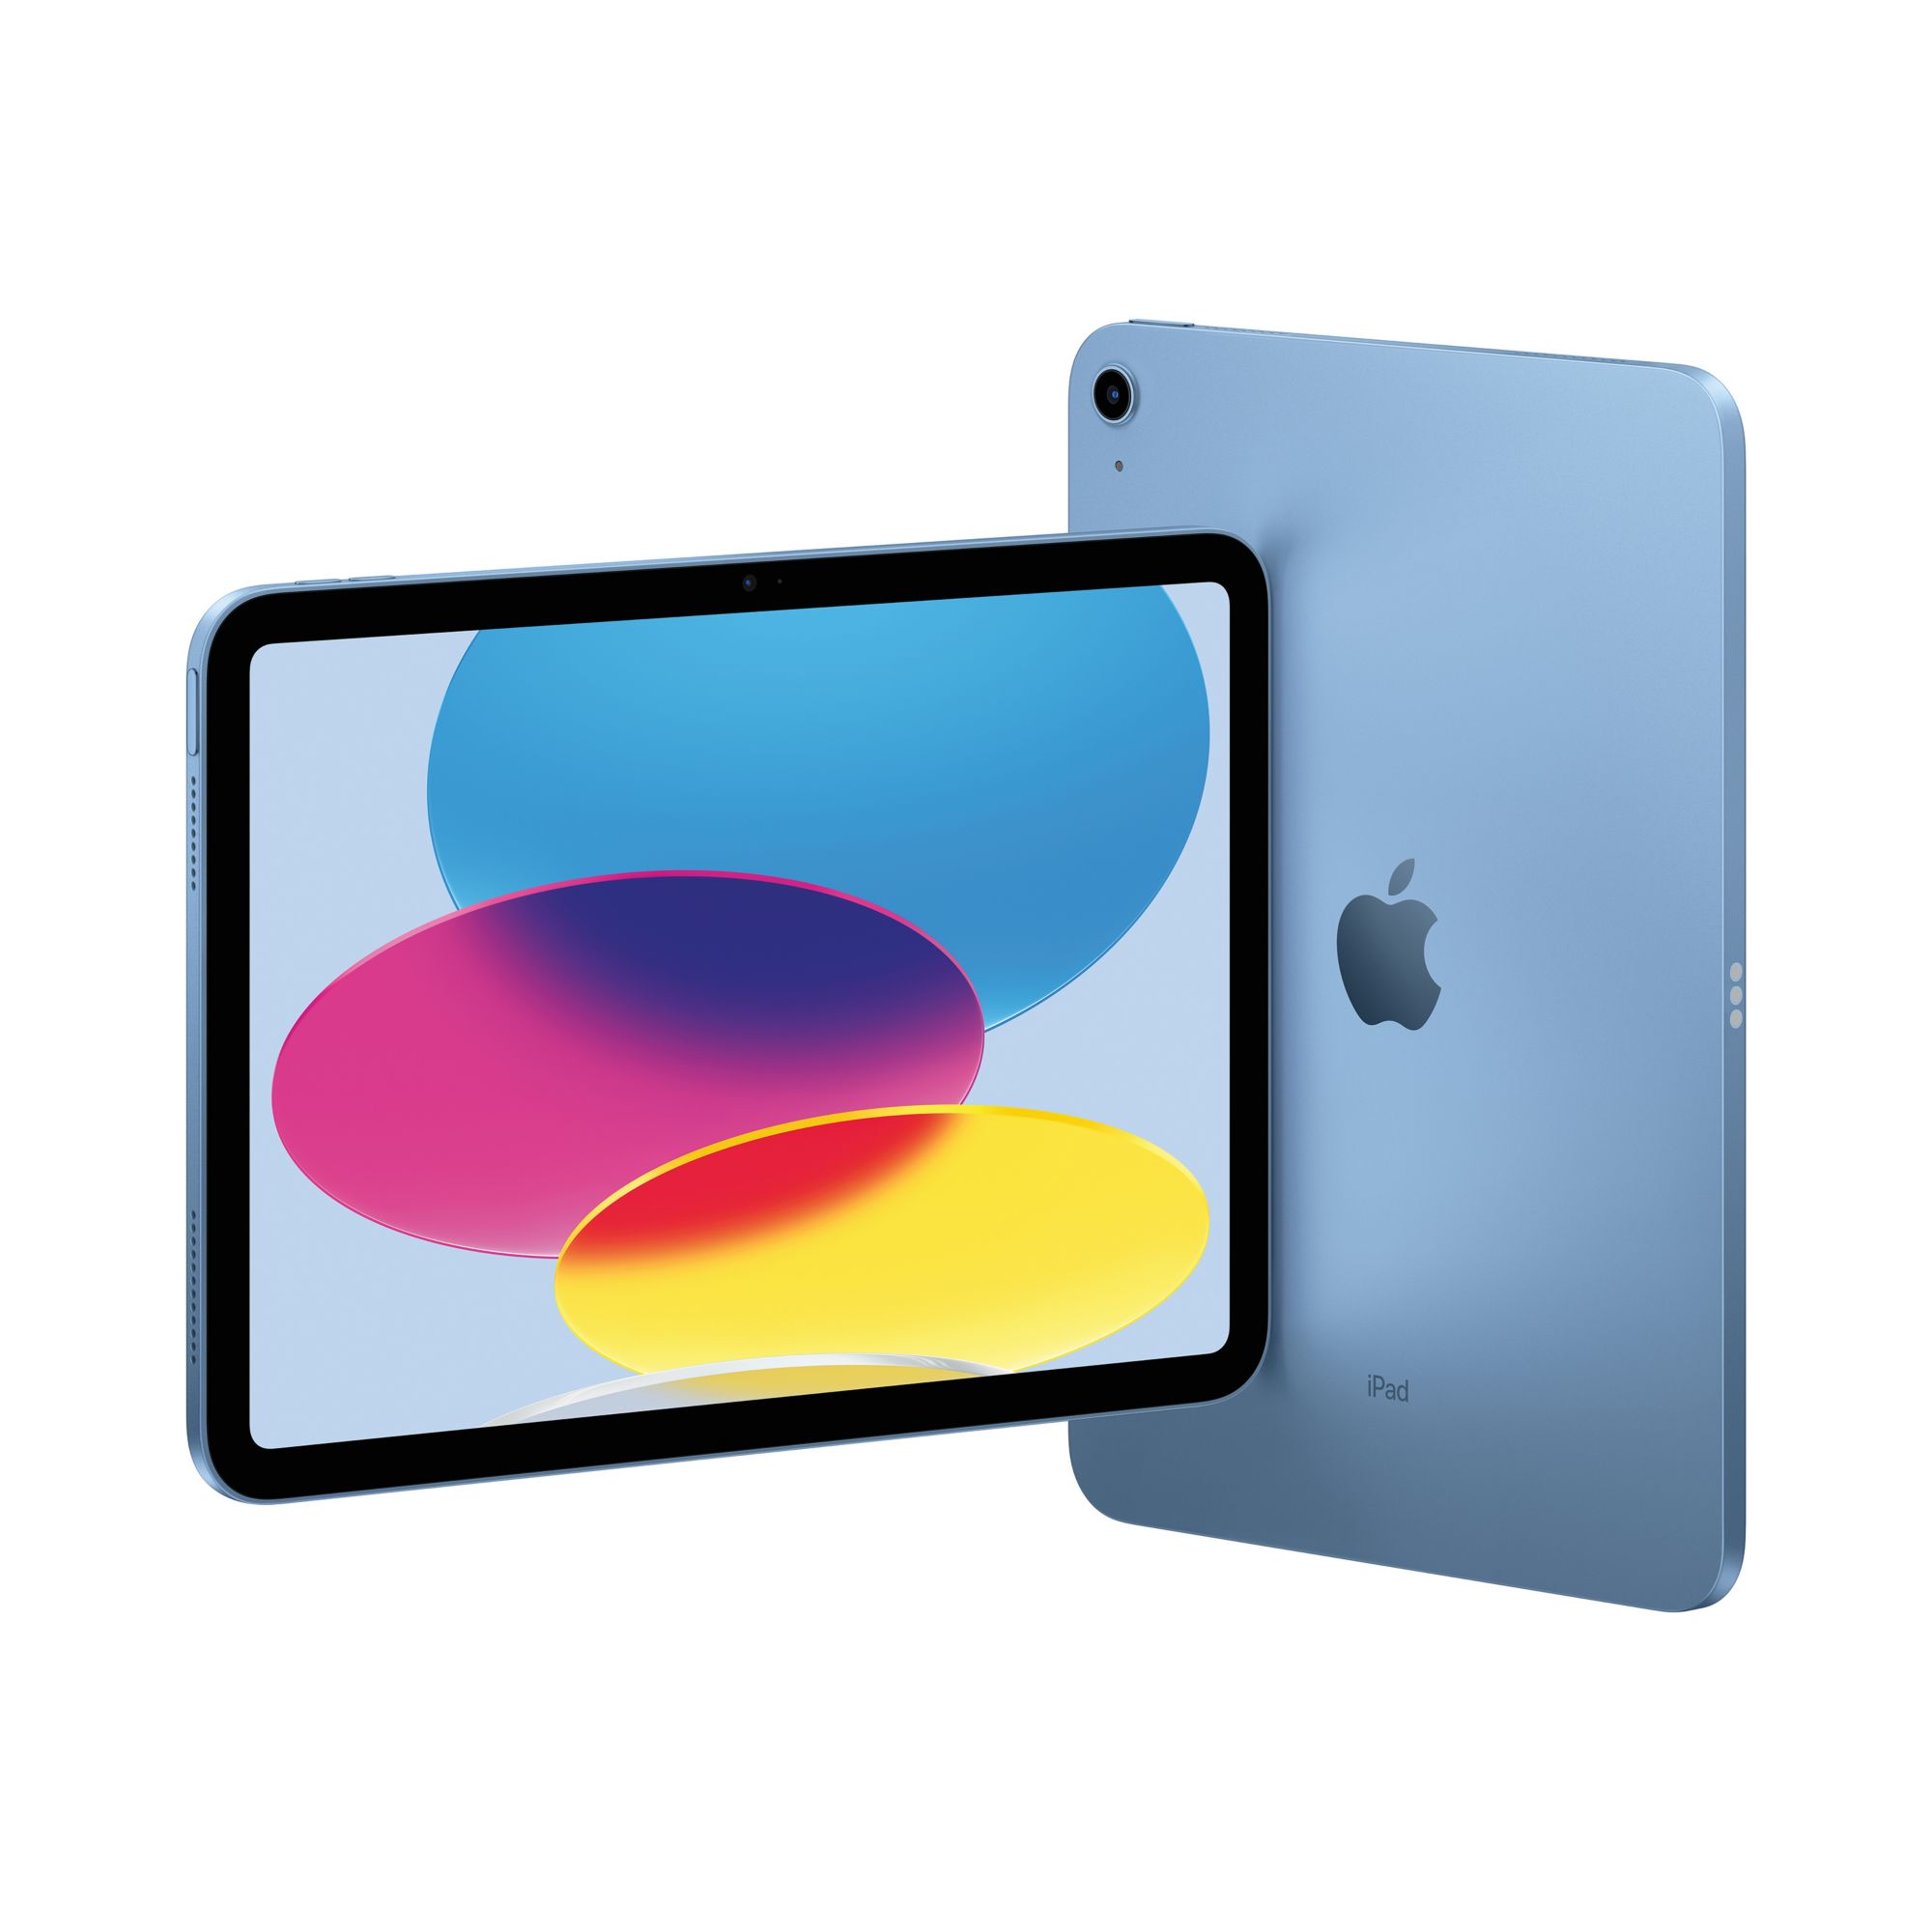  Apple iPad Mini 5th Generation, Wi-Fi, 64GB - Silver (Renewed)  : Electronics